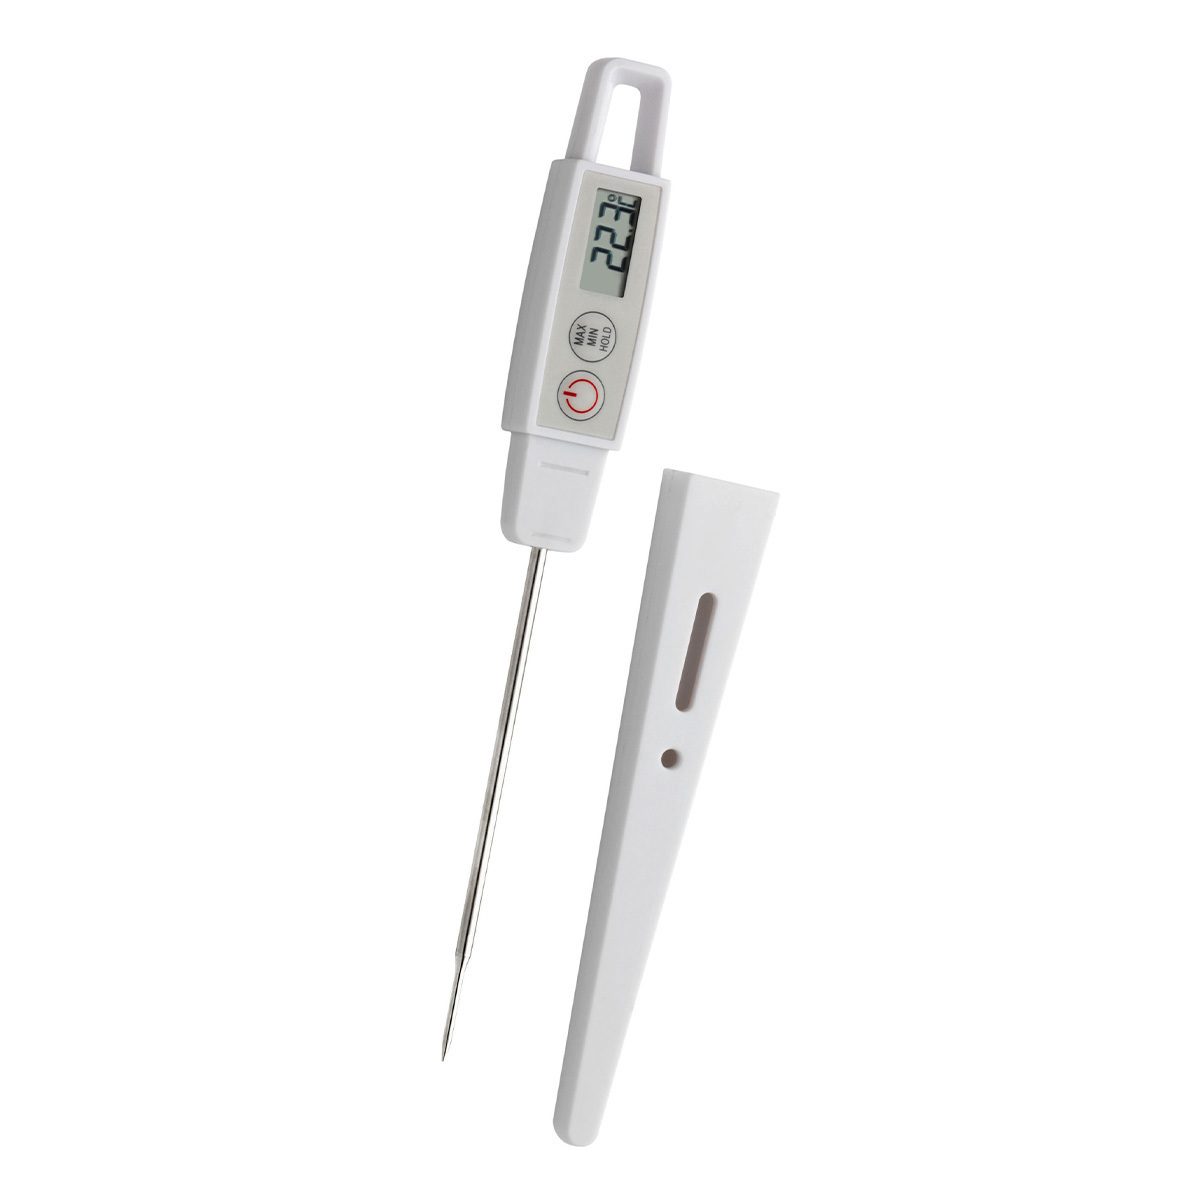 30-1040-digitales-einstich-thermometer-1200x1200px.jpg